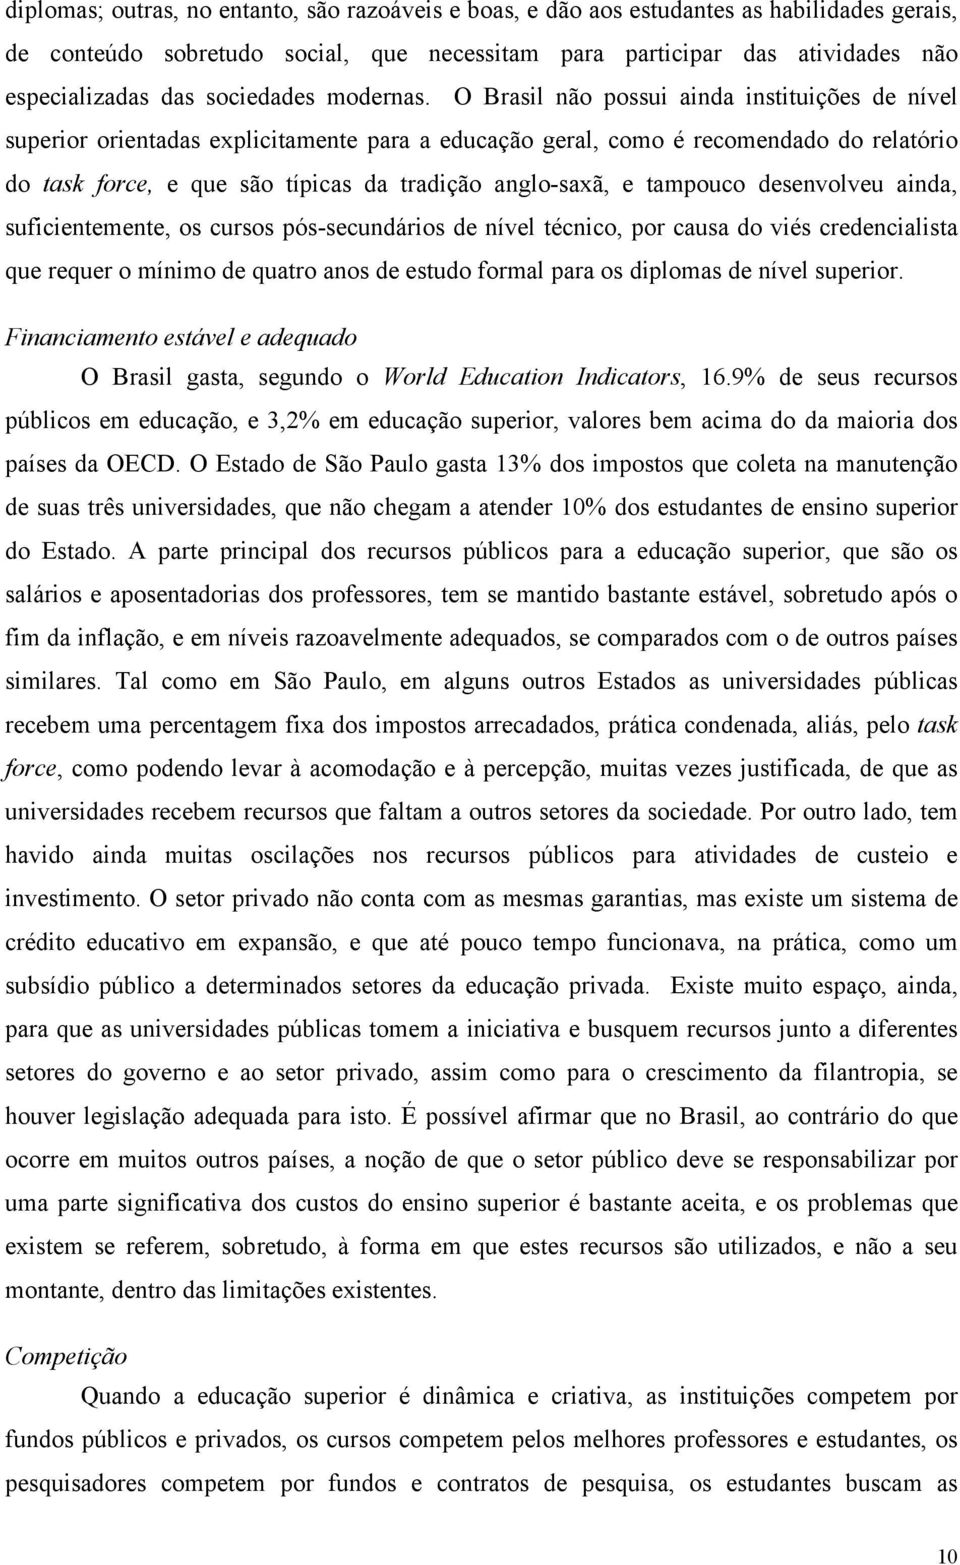 O Brasil não possui ainda instituições de nível superior orientadas explicitamente para a educação geral, como é recomendado do relatório do task force, e que são típicas da tradição anglo-saxã, e